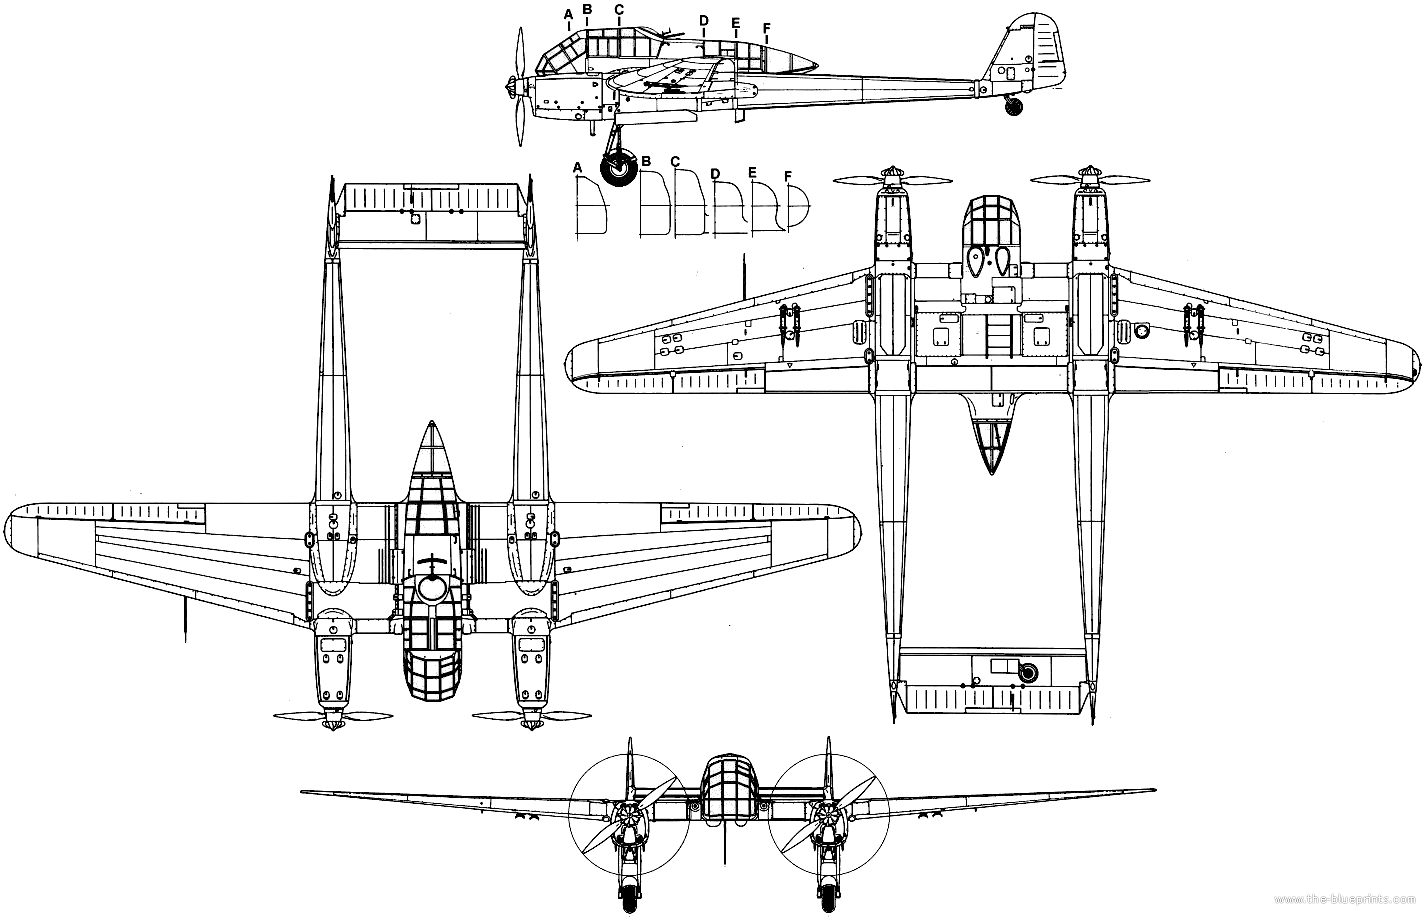 Focke-wulf fw 189 uhu